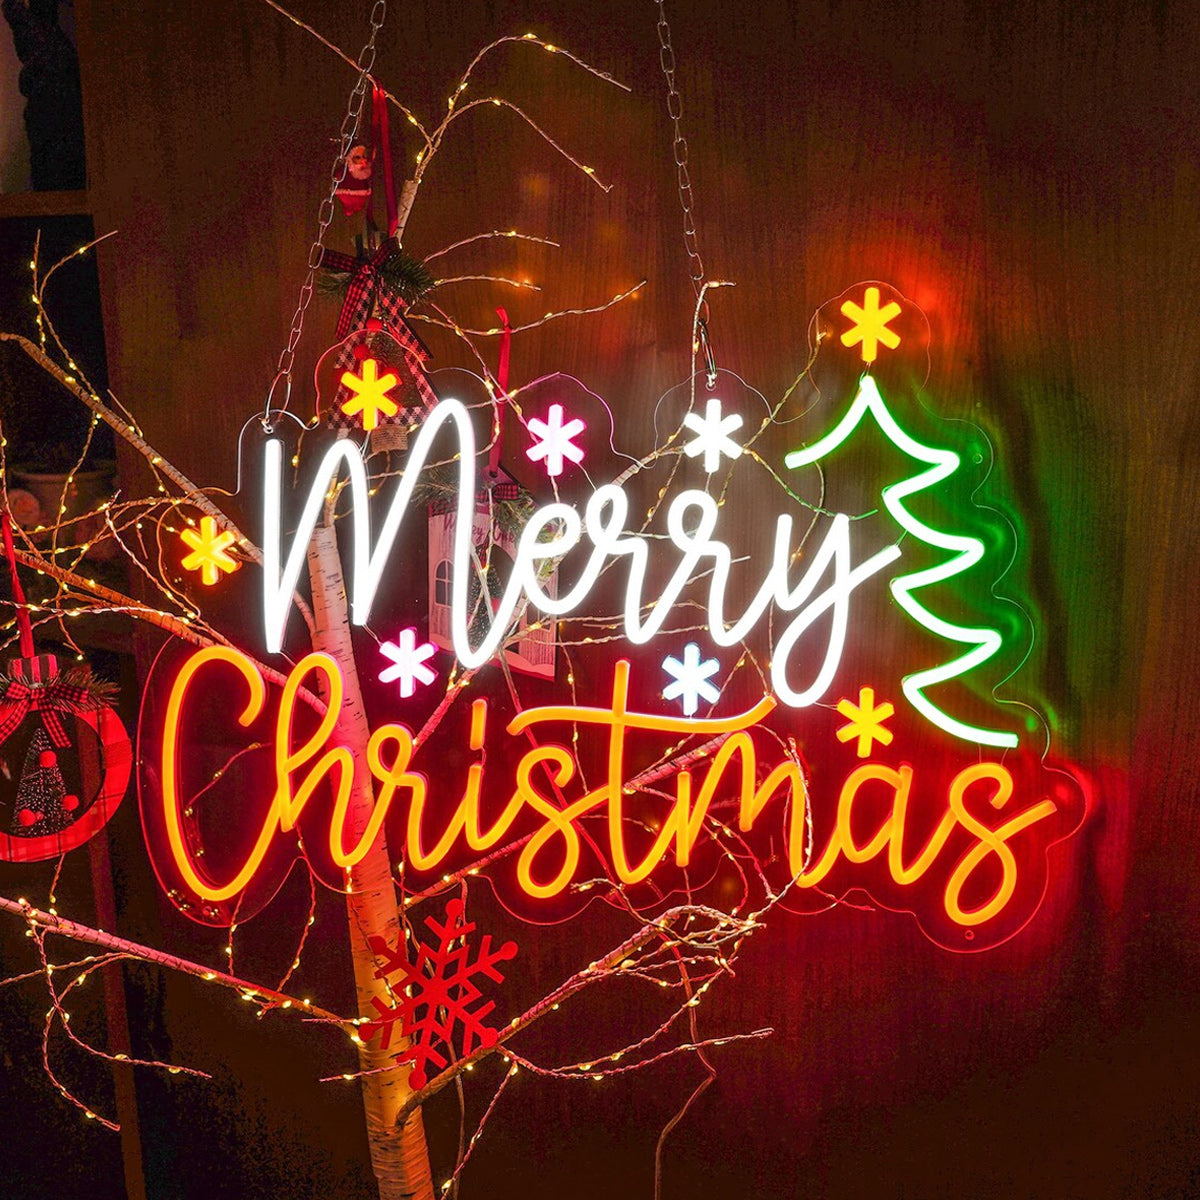 NEONIP: decorazione per feste con insegne al neon natalizie fatte a mano al 100%.